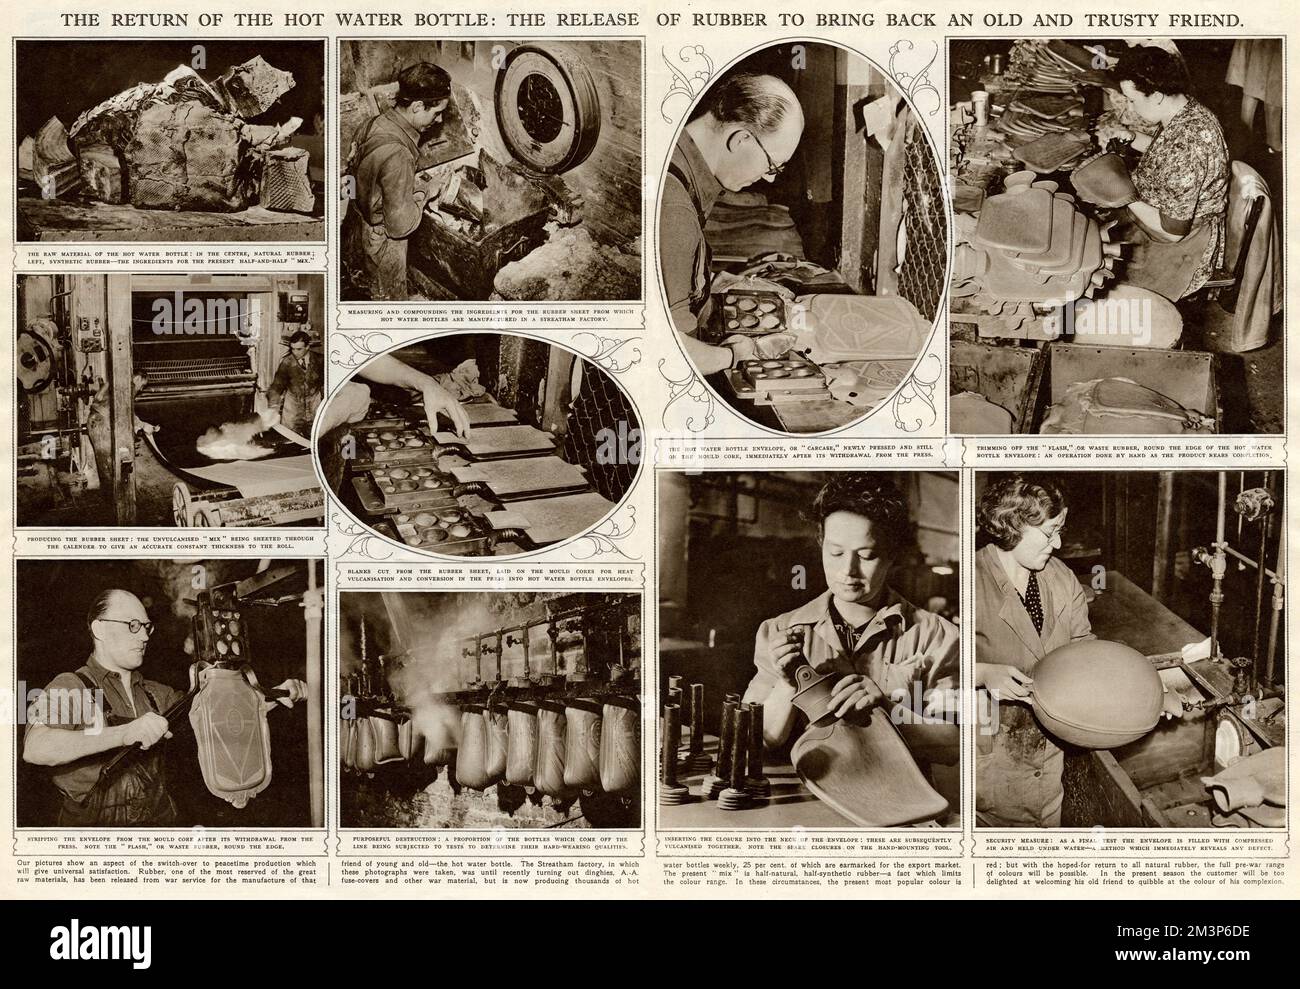 Production de la bouteille d'eau chaude synthétique en caoutchouc à l'usine de Streatham, Londres, après la Seconde Guerre mondiale. Pendant la guerre, le caoutchouc était réservé à la fabrication de pneus pour les camions militaires. En 1946, le caoutchouc a été libéré de l'effort de guerre et la fabrication de caoutchouc dans des soute maison a été autorisée. Date: 1946 Banque D'Images